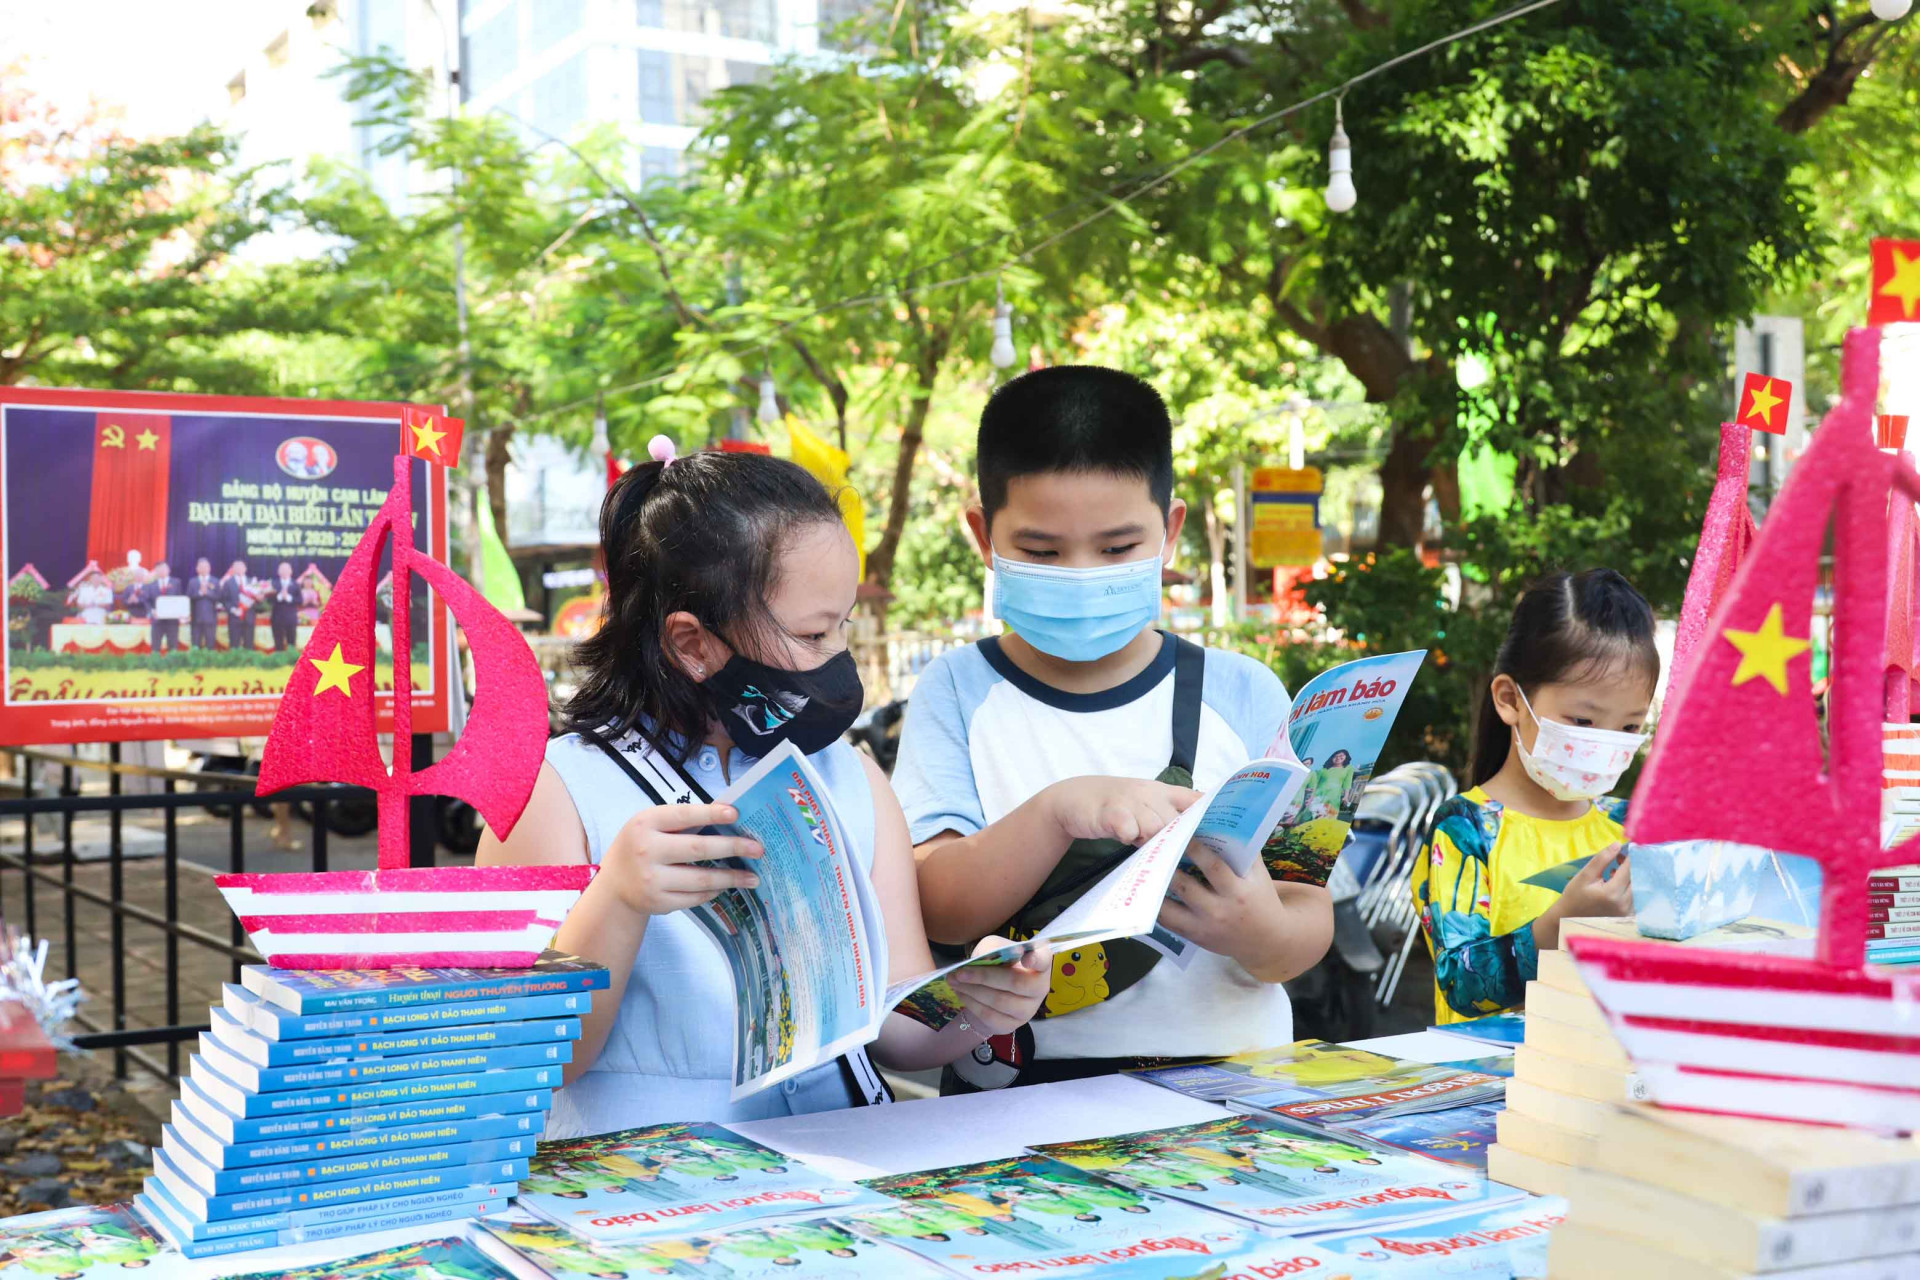 Năm nay, Thư viện tỉnh Khánh Hòa vẫn được chọn làm địa điểm để tổ chức Hội báo Xuân. Bên cạnh đó, Thư viện tỉnh Khánh Hòa còn tổ chức ngày hội Trang sách hồng dành cho thiếu nhi. 